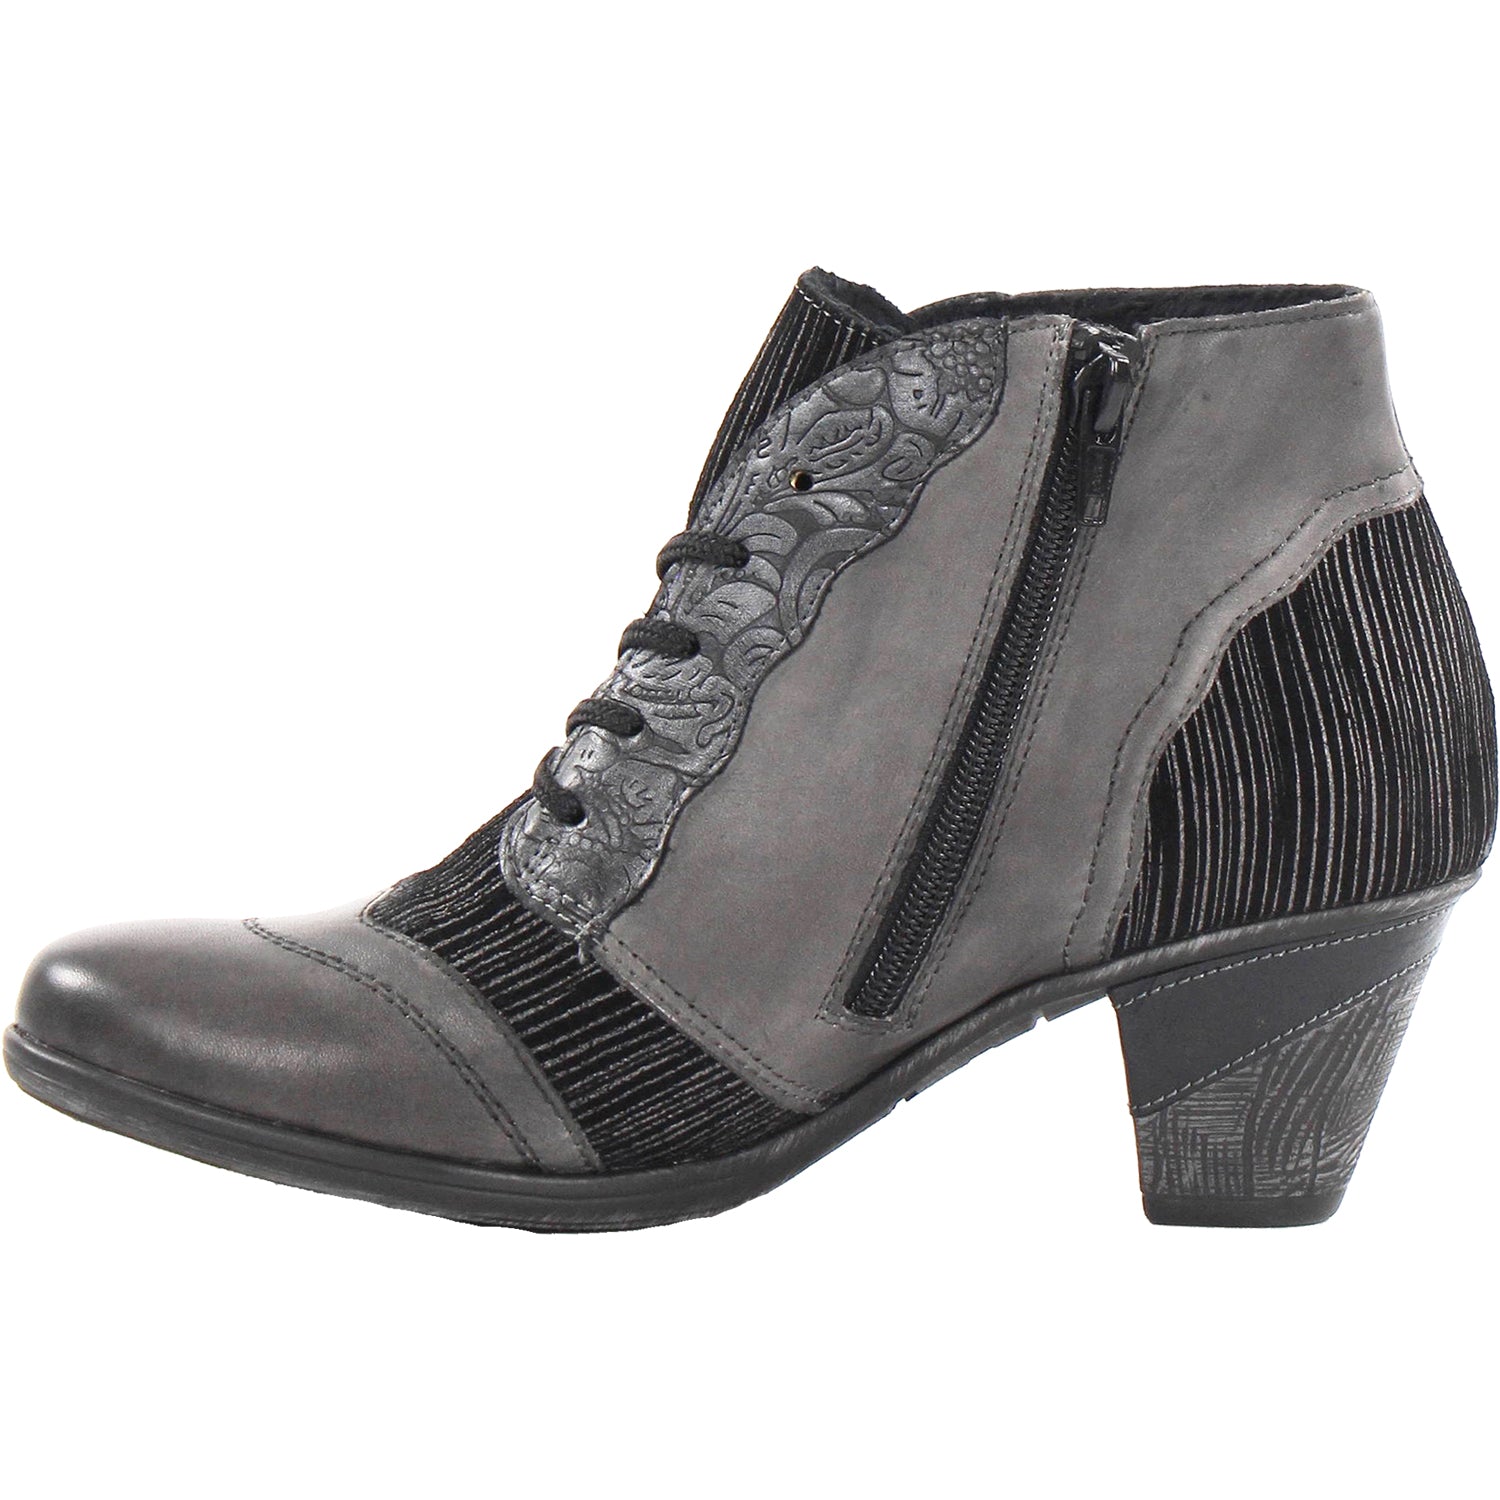 Remonte D8789-40 Cheyenne 89 | Women's Ankle Boots | Footwear etc.